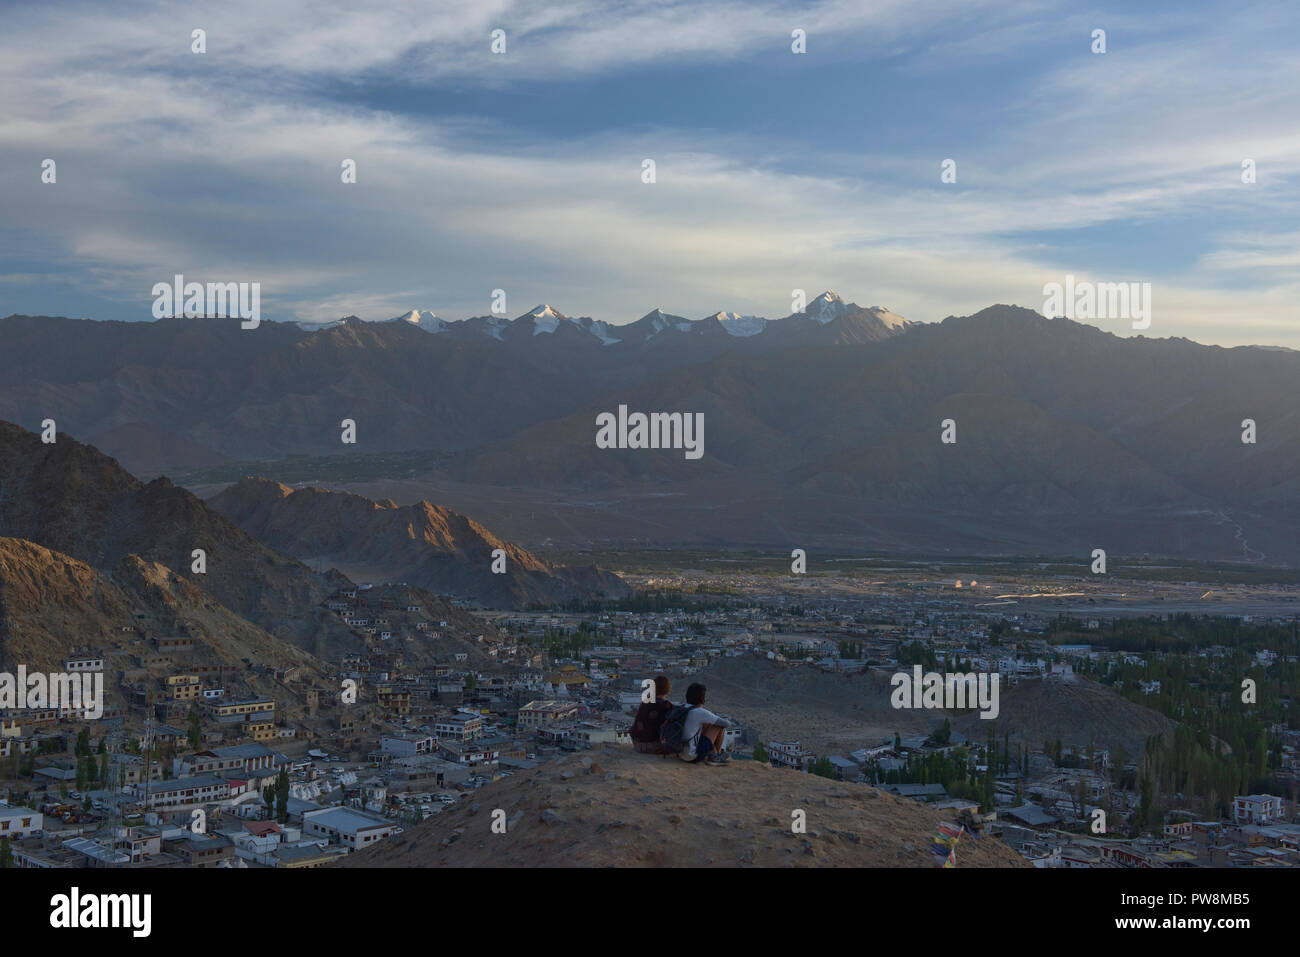 Letzten Sonnenlicht über Leh, Stok Kangri und die Ladakh Range, Leh, Ladakh, Indien Stockfoto